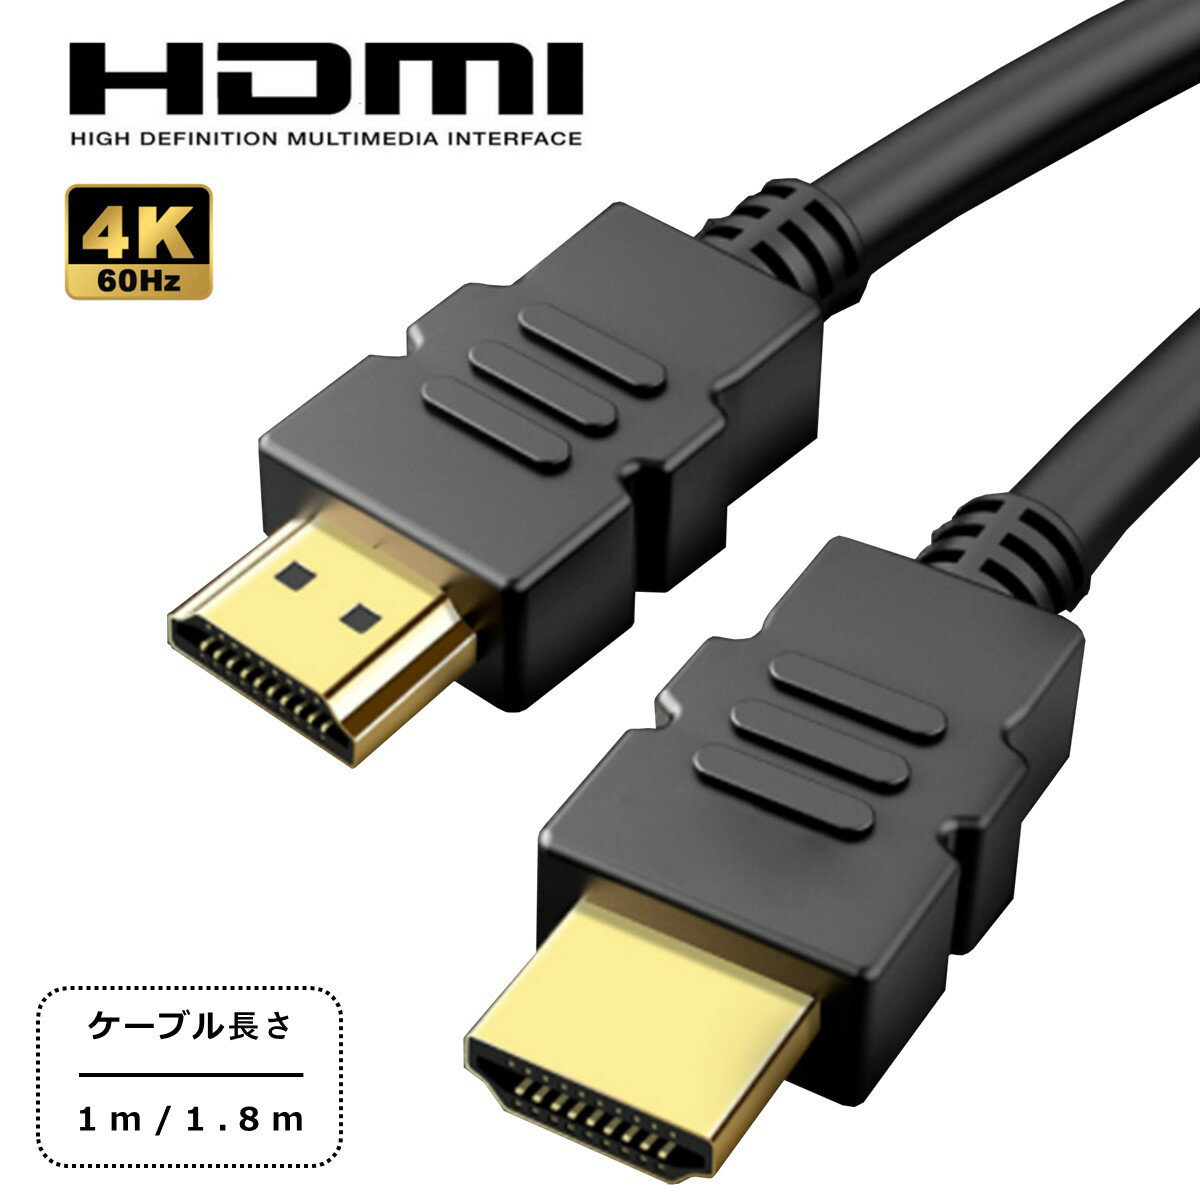 HDMI ケーブル 1m 1.8m Ver.2.0 フルハイビジョン HDMI ケーブル 4K 3D ハイスピード パソコン モニター テレビ Switch PS5 PS4 レグザリンク ビエラリンク 端子 送料無料